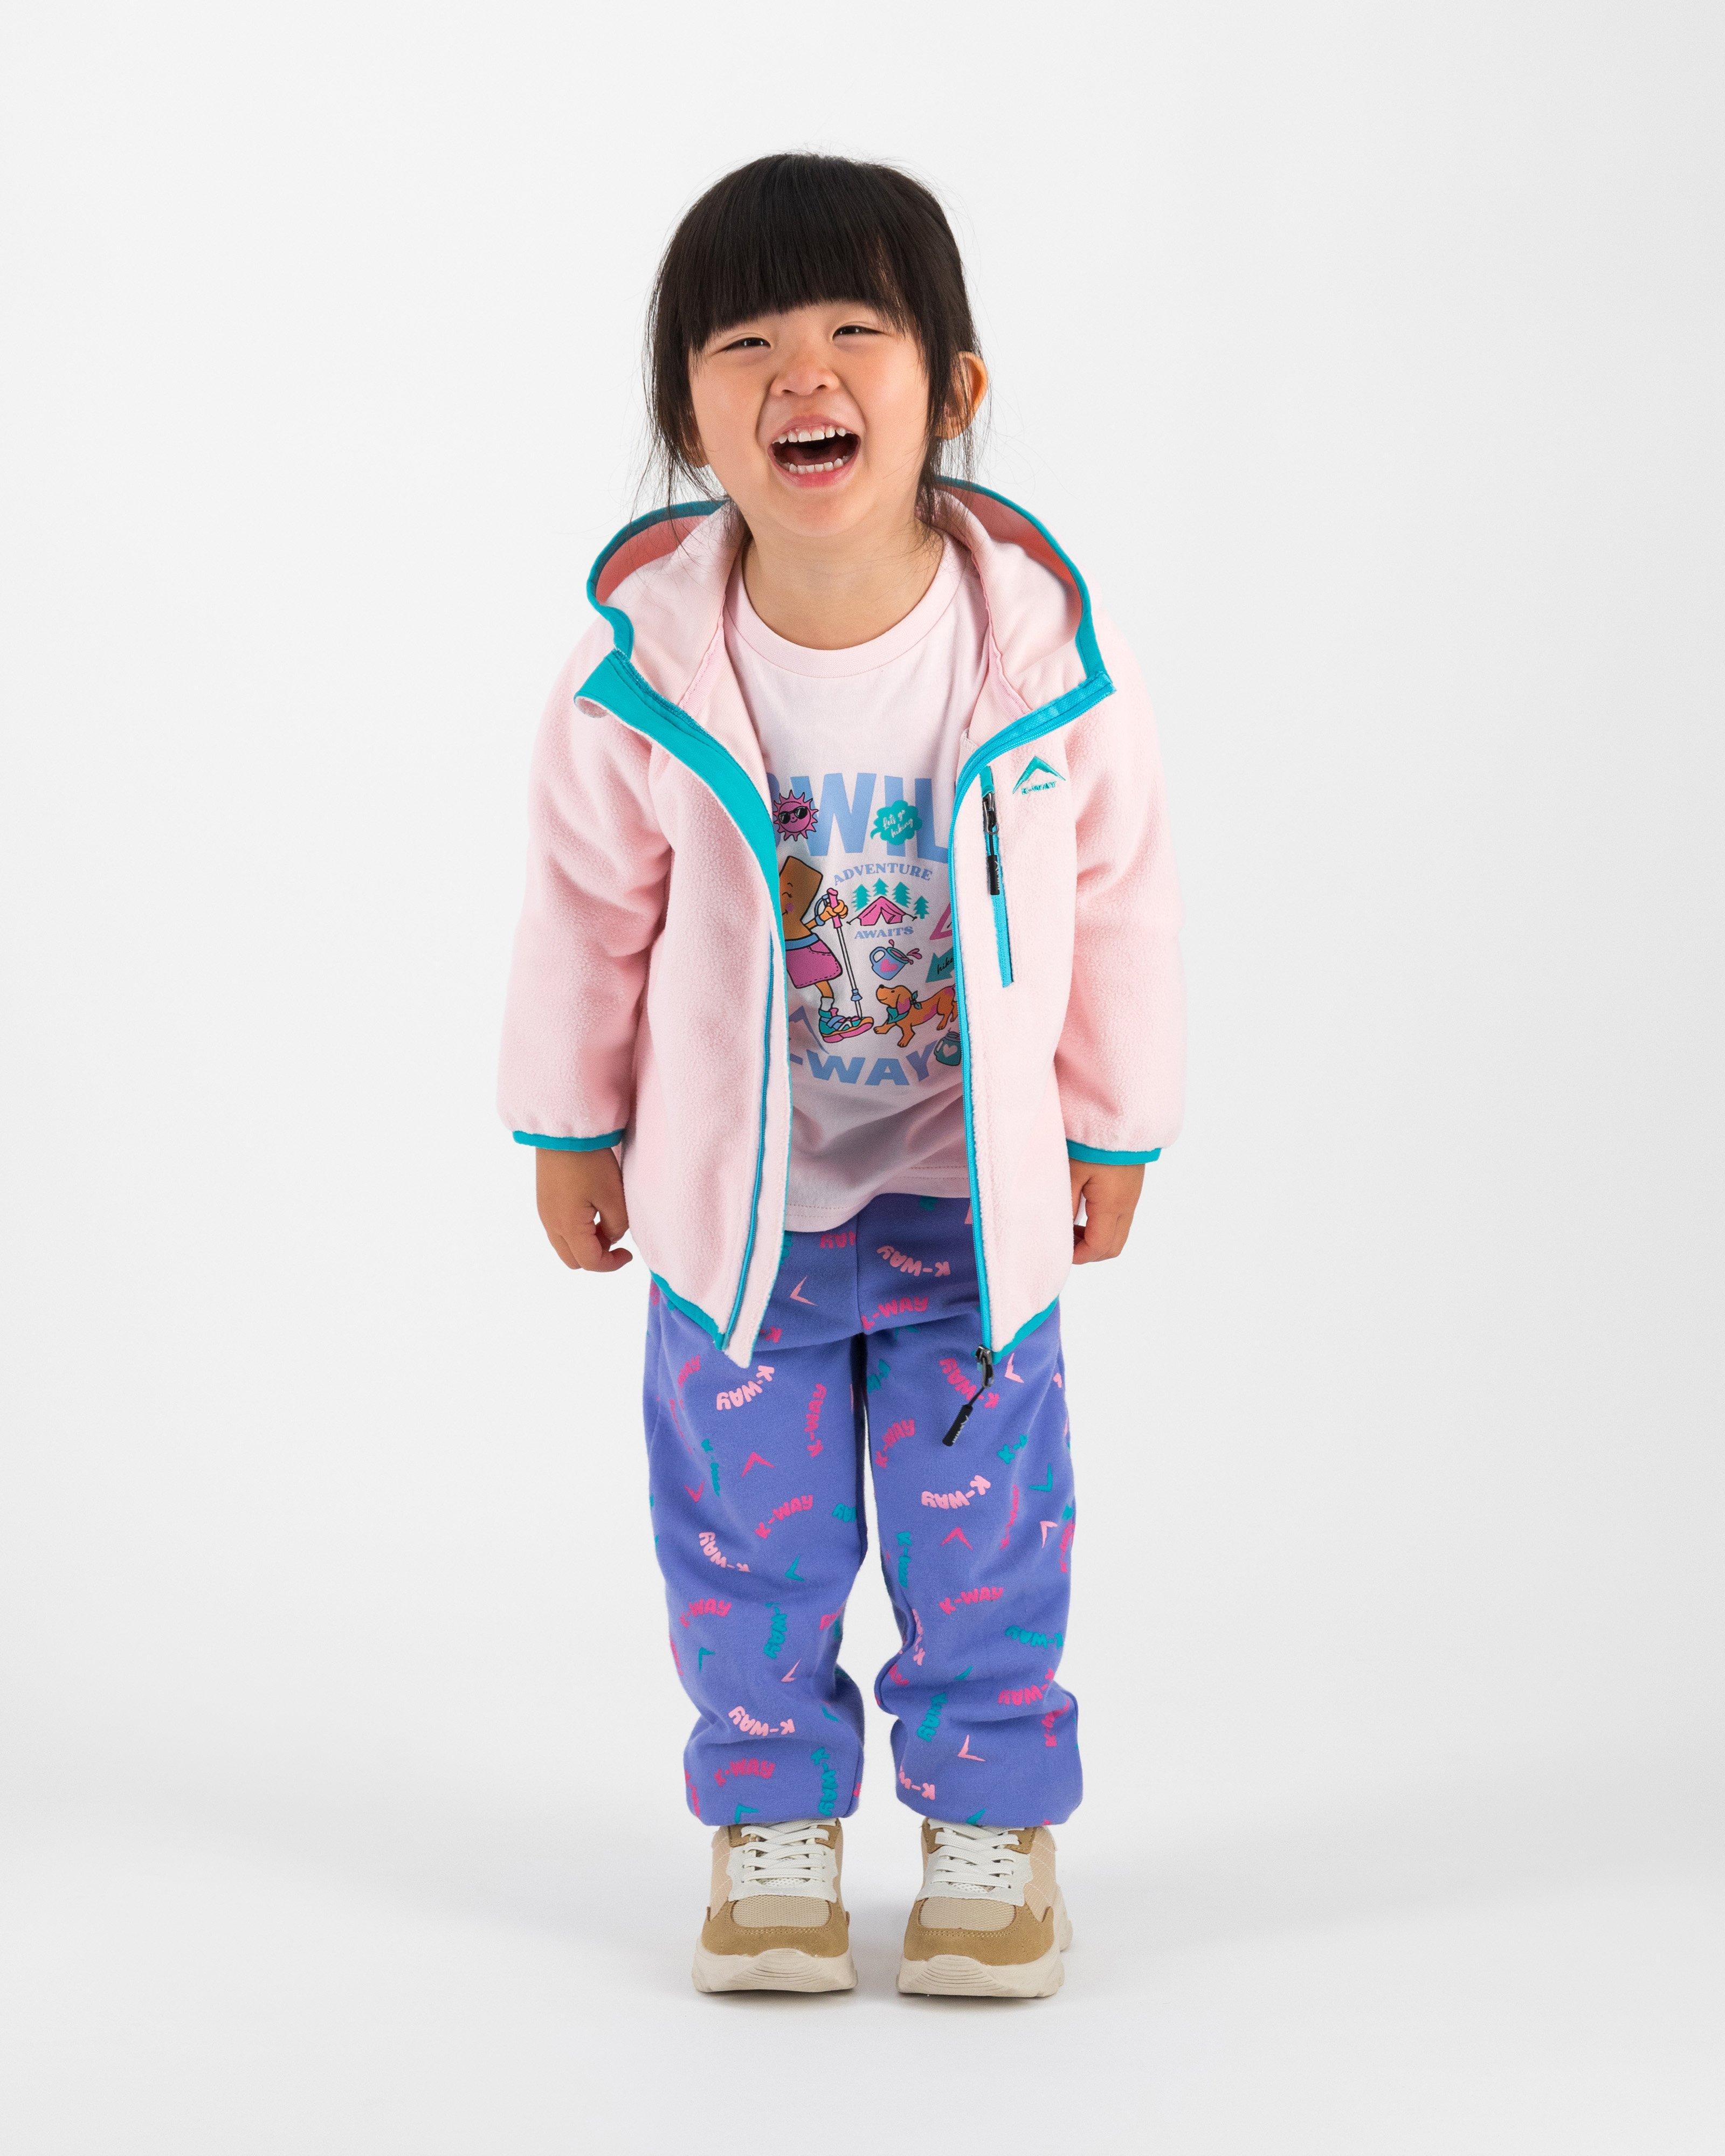 K-Way Kids Girls’ Reign Water Repellent Fleece Jacket -  Pale Pink